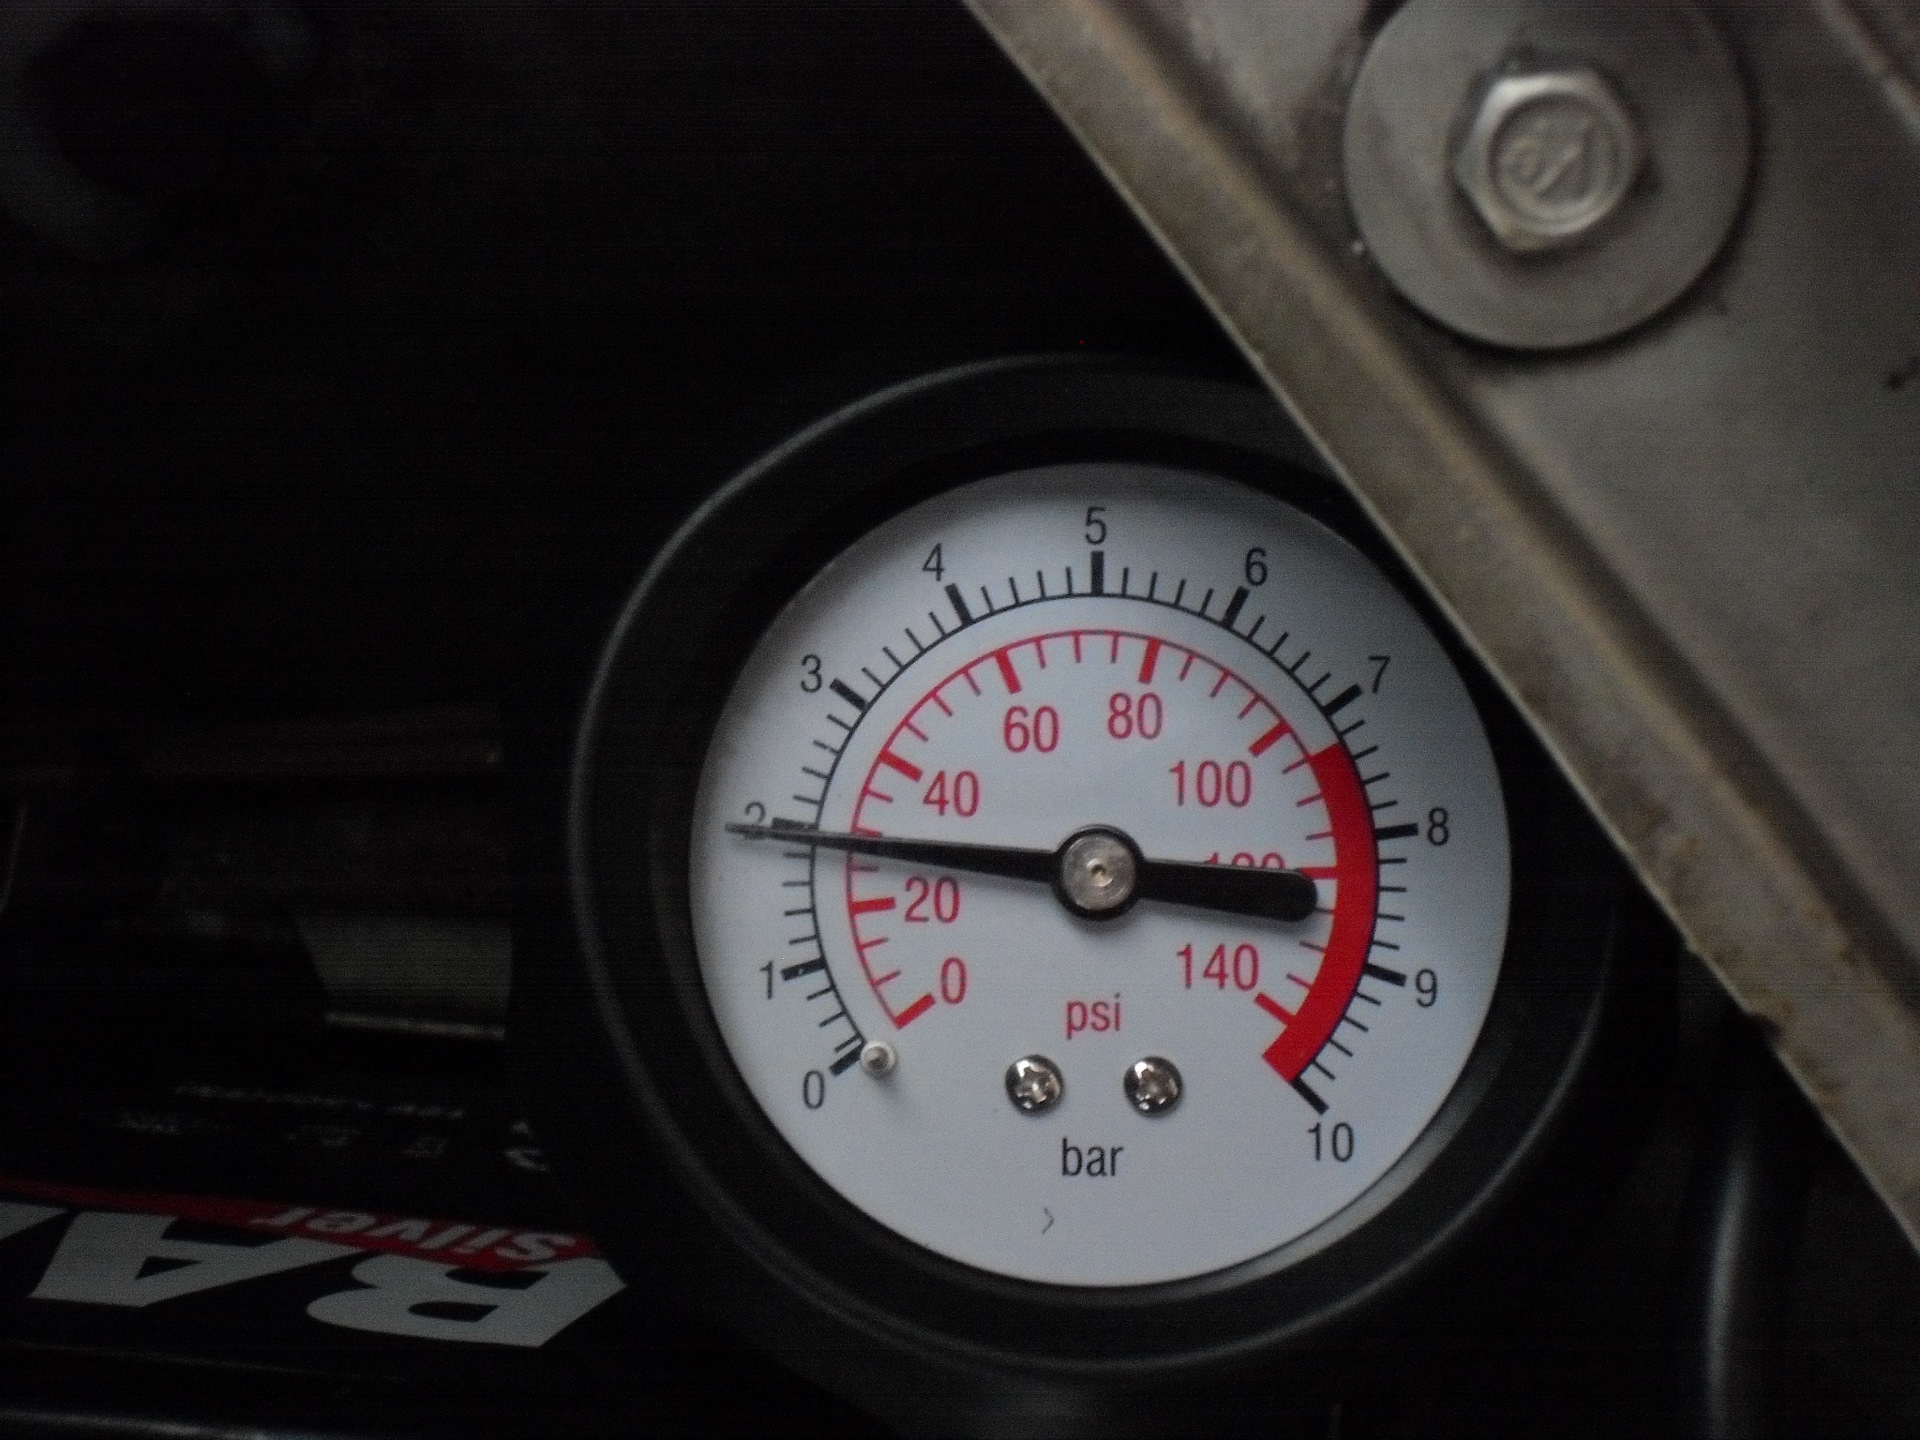 Gsf250 Bandit "давление масла в двигателе". Давление масла в ДВС 160 бар. Одометр давление масла. В чем измеряется давление масла в двигателе.